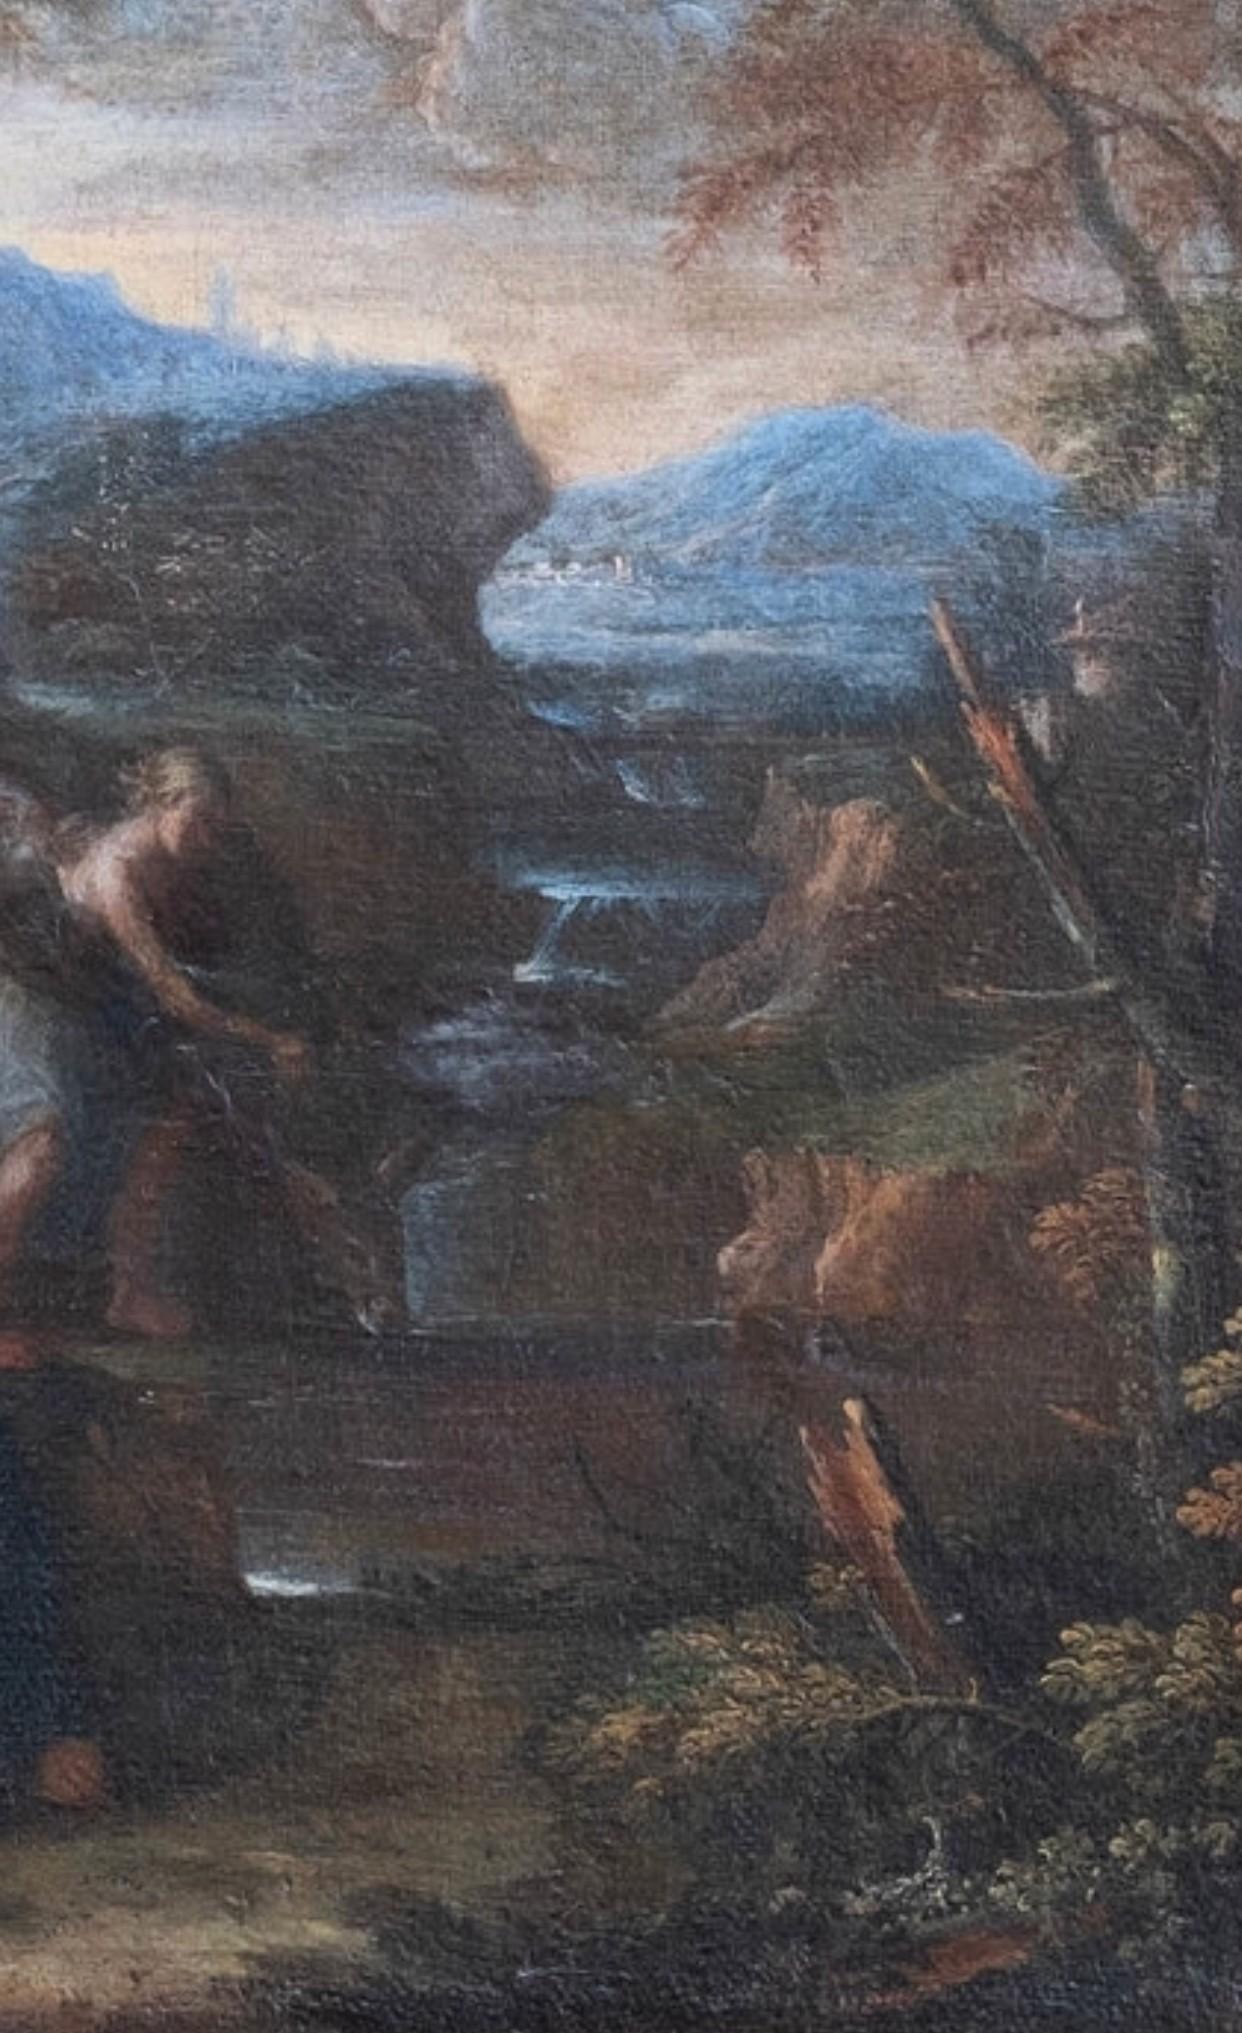 Pier Francesco MOLA, genannt Il TICINESE (1612-1666) zugeschrieben
Rast auf der Flucht nach Ägypten
Öl auf Leinwand
25,5 x 27 Zoll einschließlich Rahmen

Pier Francesco Mola, genannt Il Ticinese (9. Februar 1612 - 13. Mai 1666) war ein italienischer